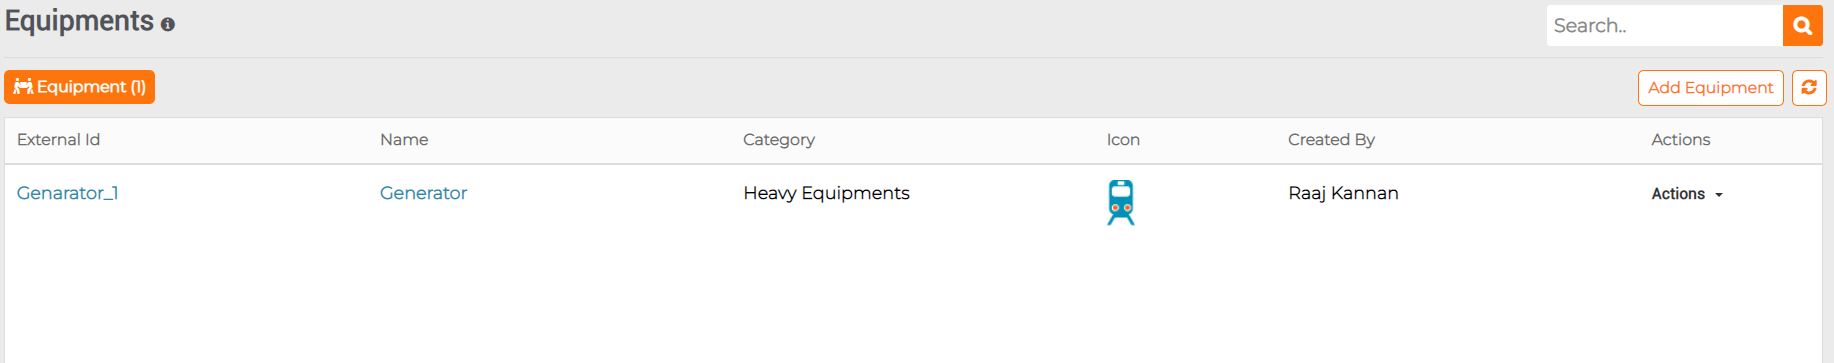 list of equipments